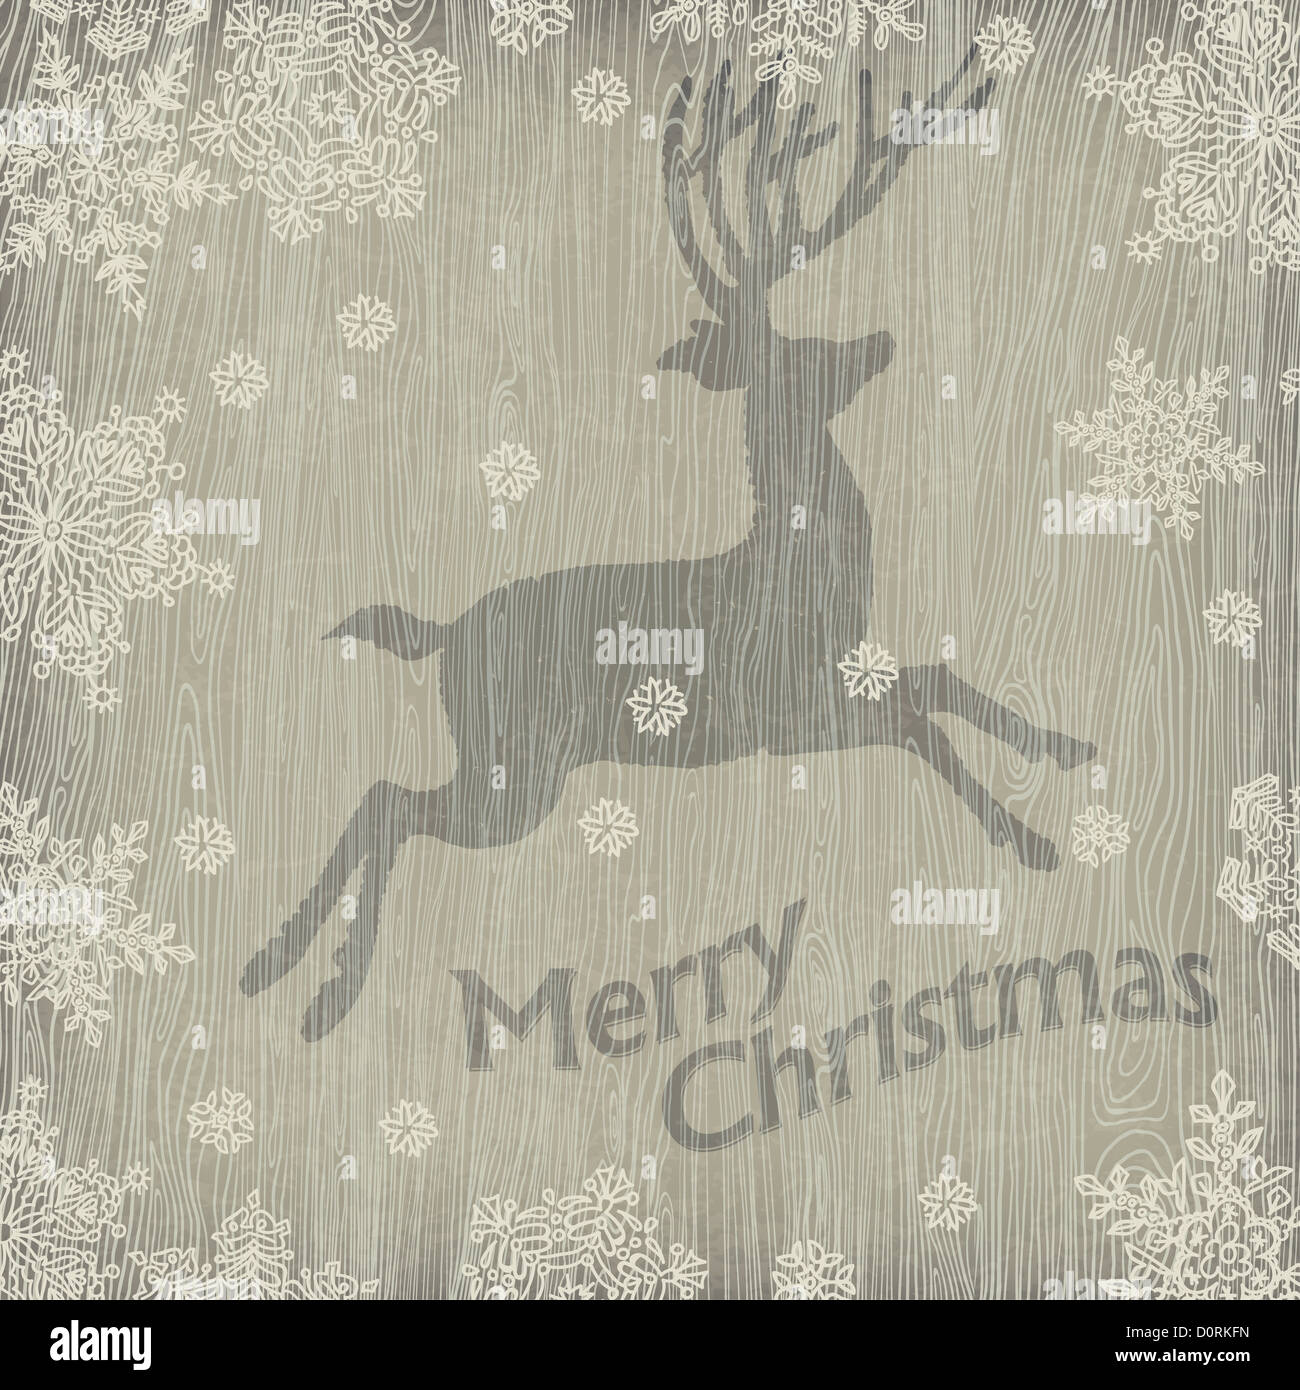 Weihnachten Hirsch mit Schneeflocken auf Holz Textur. Stockfoto